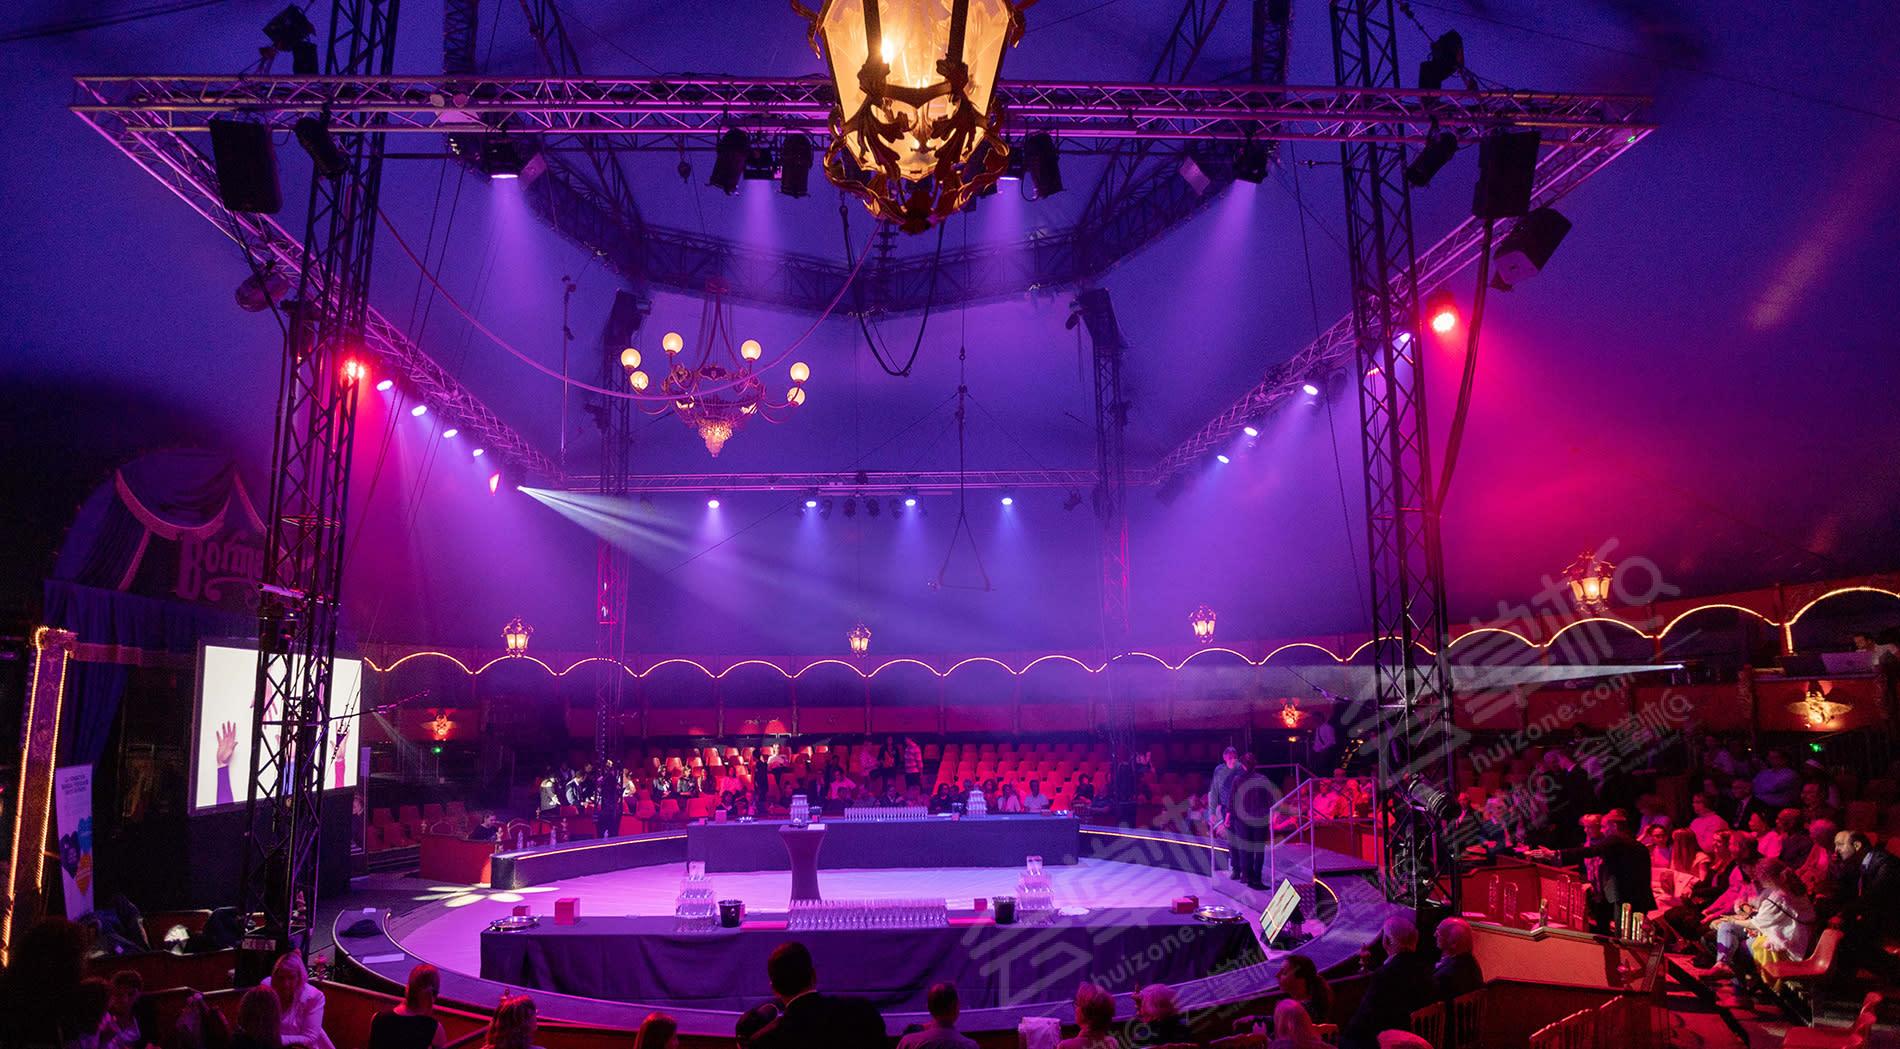 Lieu de réception incroyable dans un cirque permanent privatisable - Paris 15ème